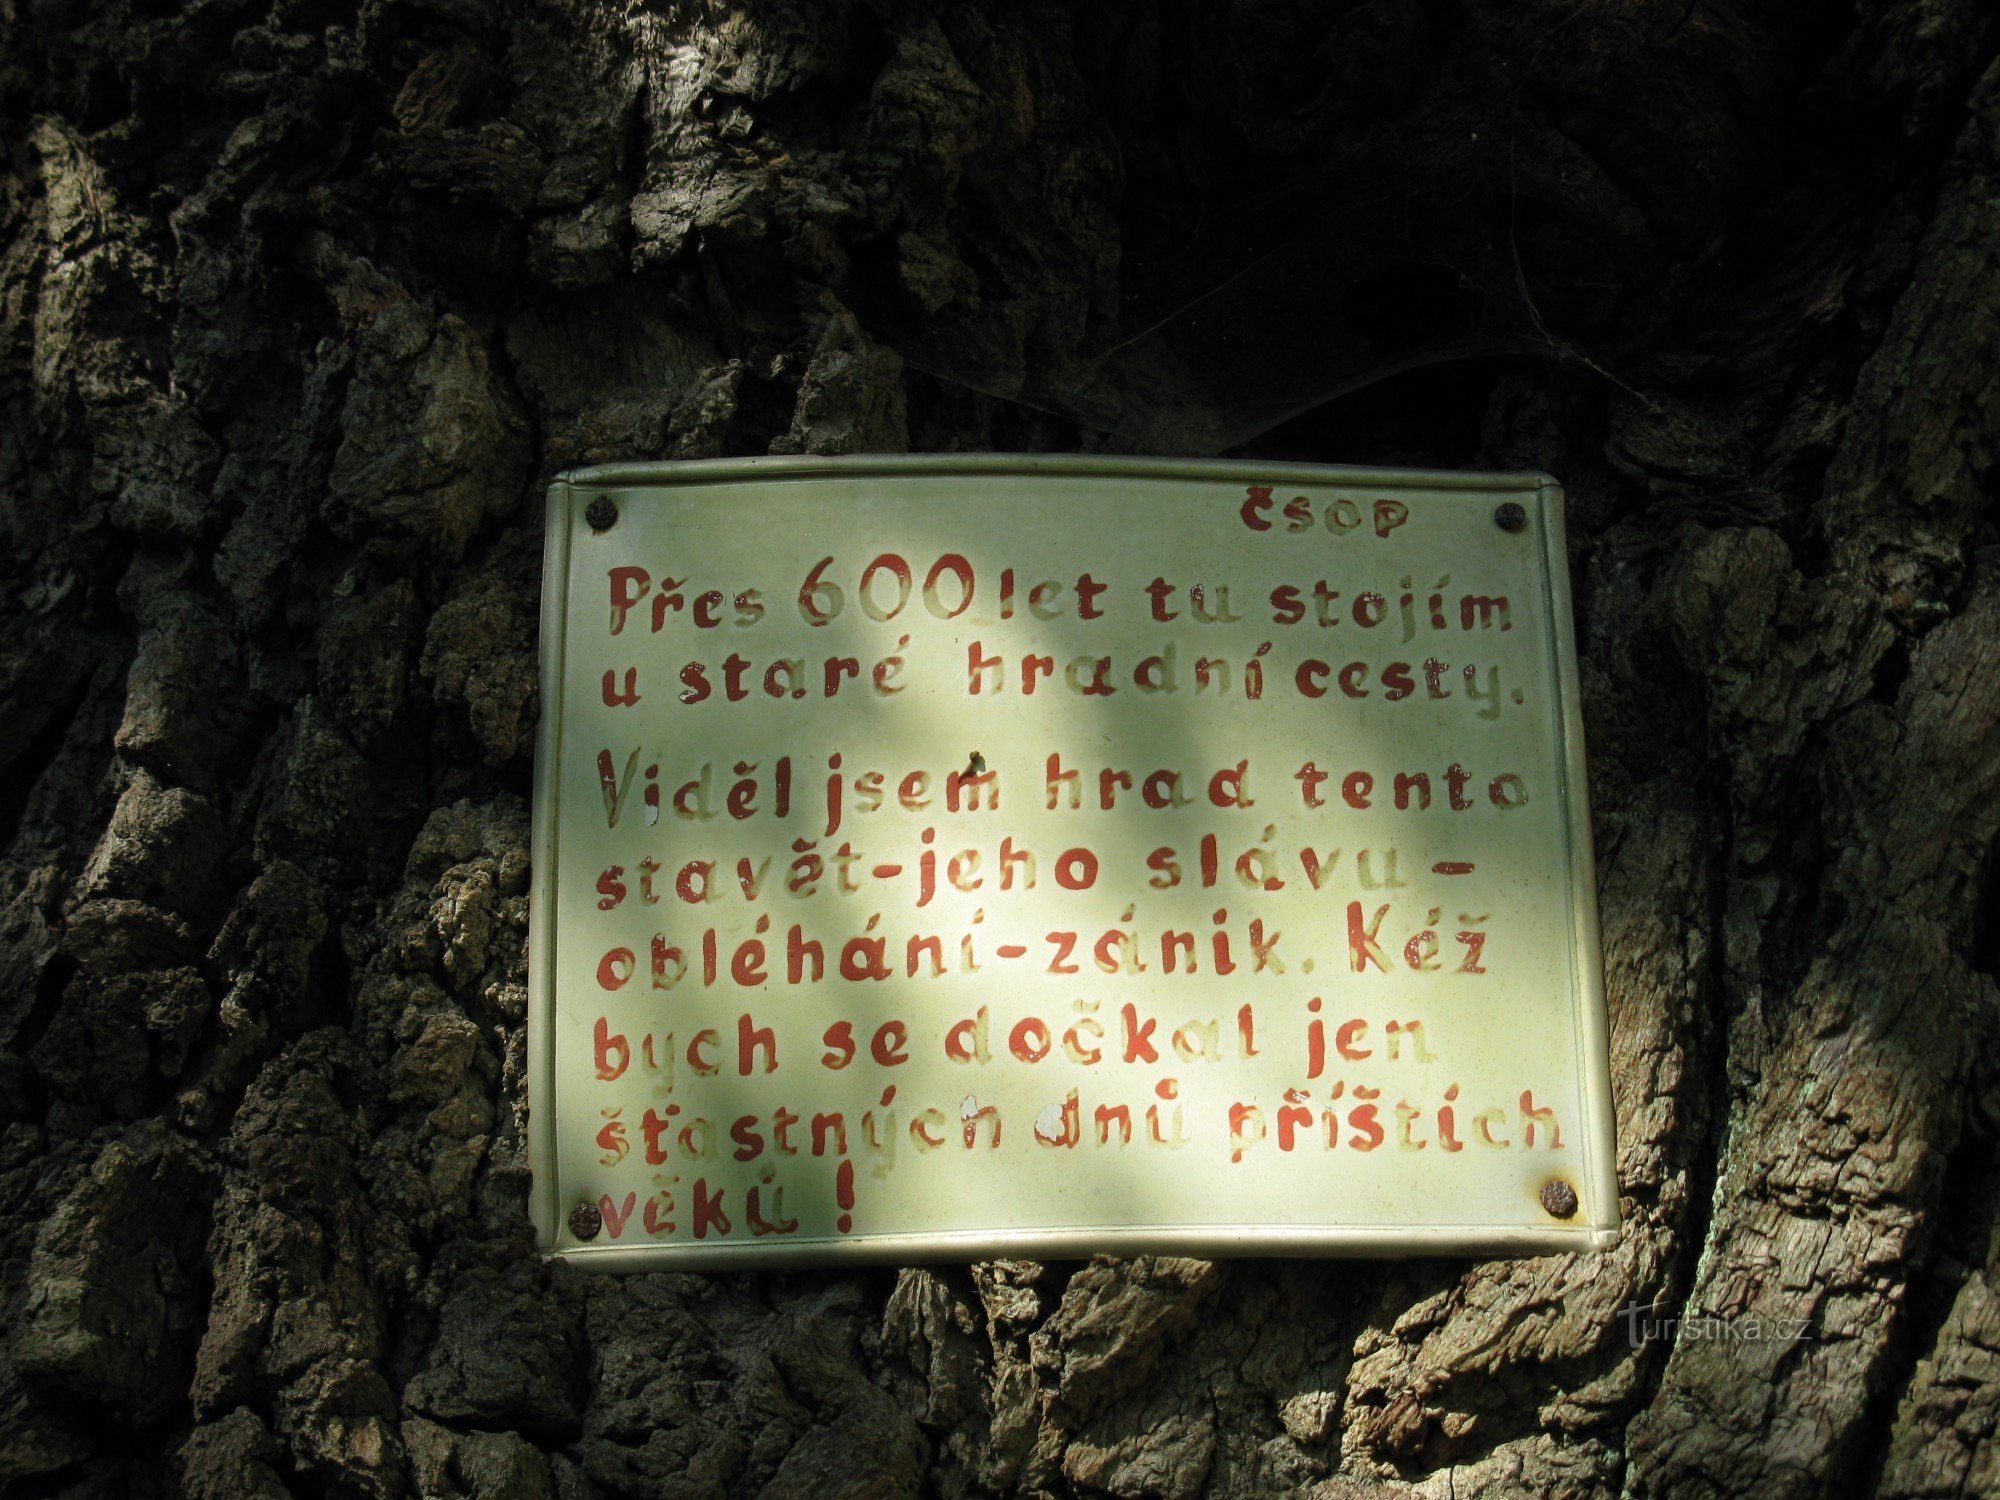 inscription on the oak tree